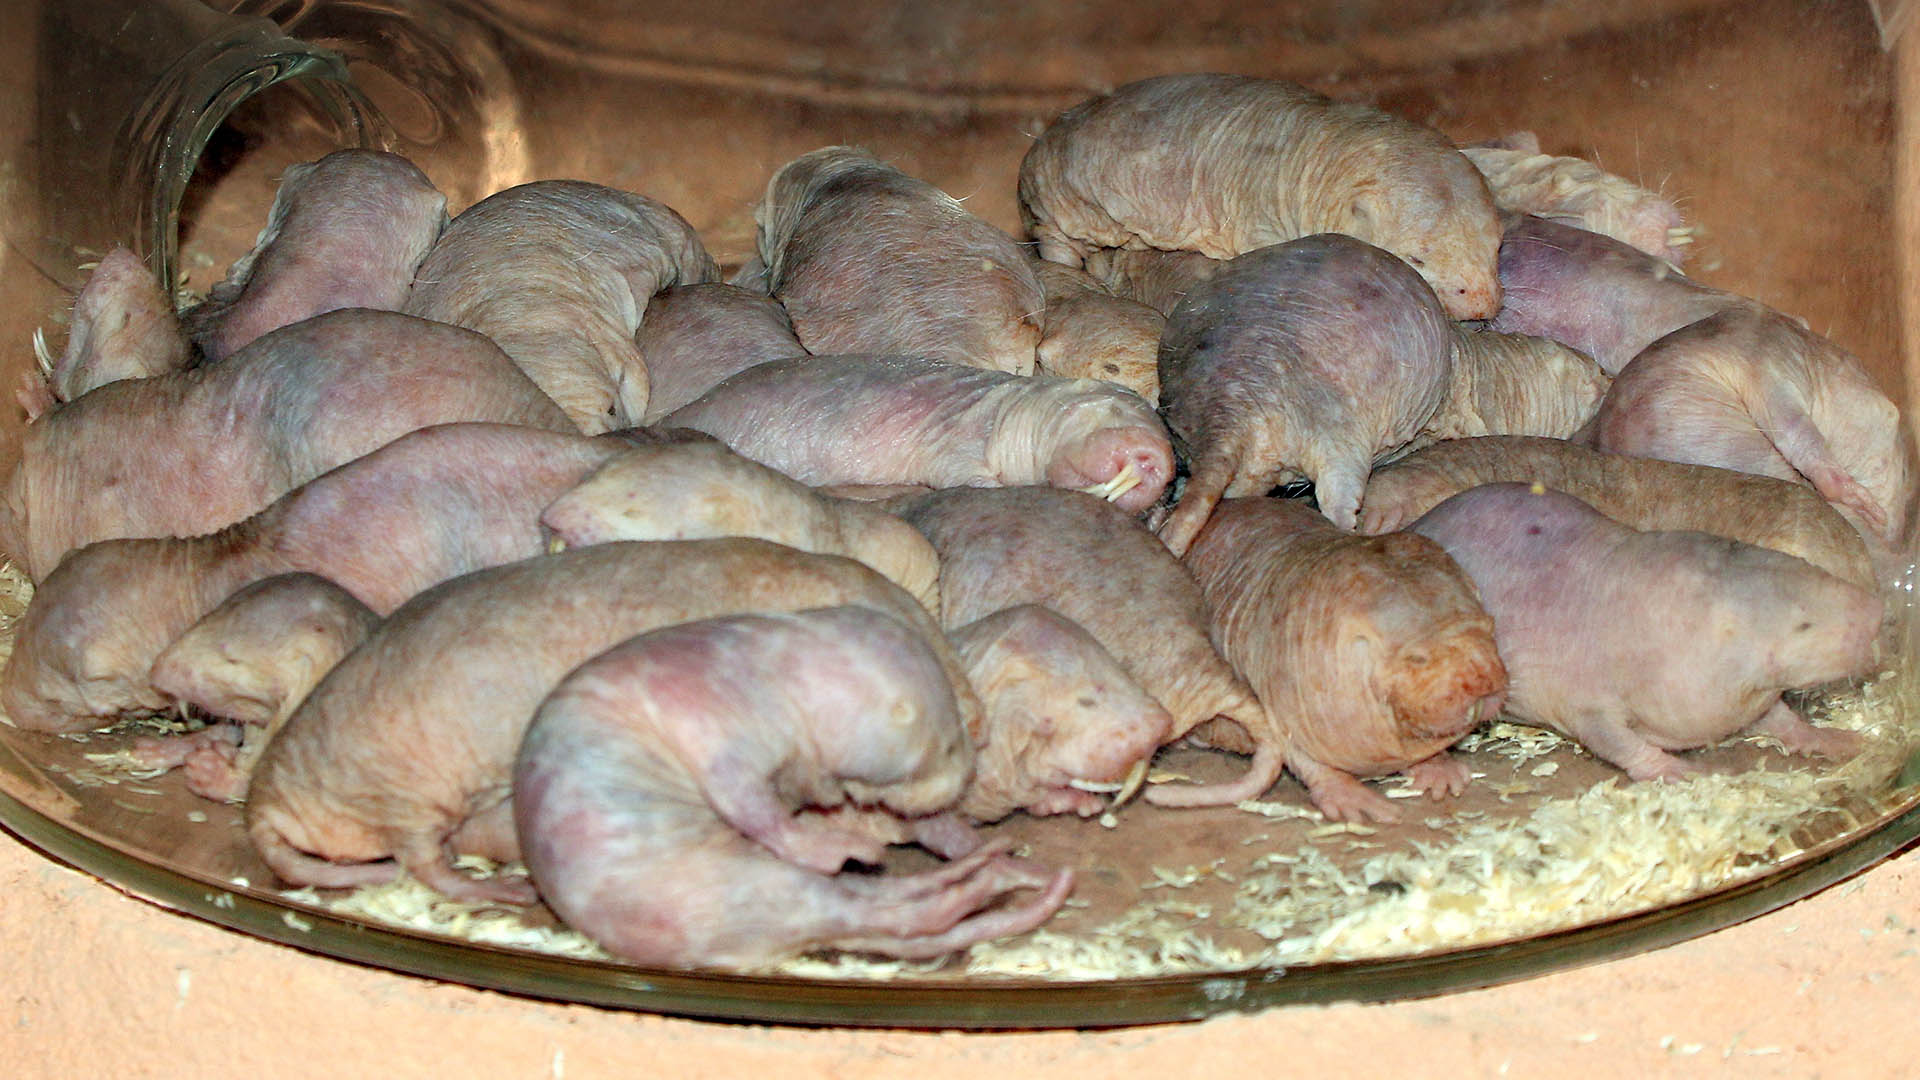 La rata topo desnuda (Heterocephalus glaber) ha desconcertado durante años a los científicos por desafiar las leyes de la biología (Getty Images)